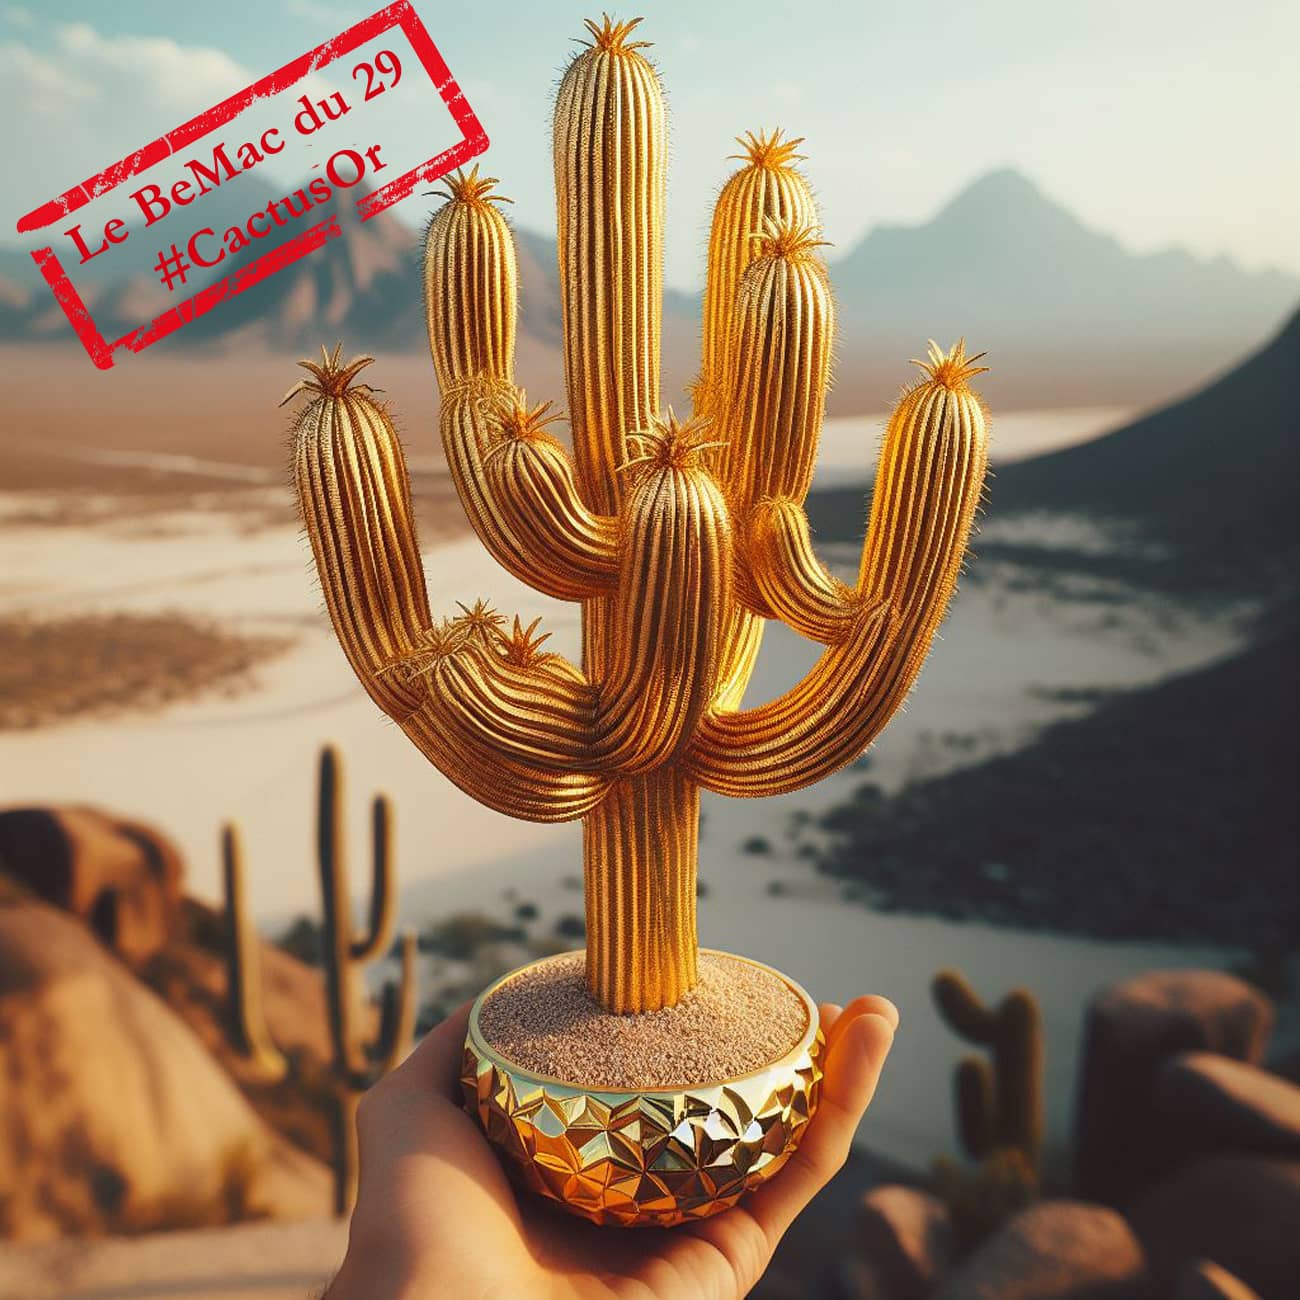 Cactus d’or 2023 : le premier prix représenté par un cactus en or